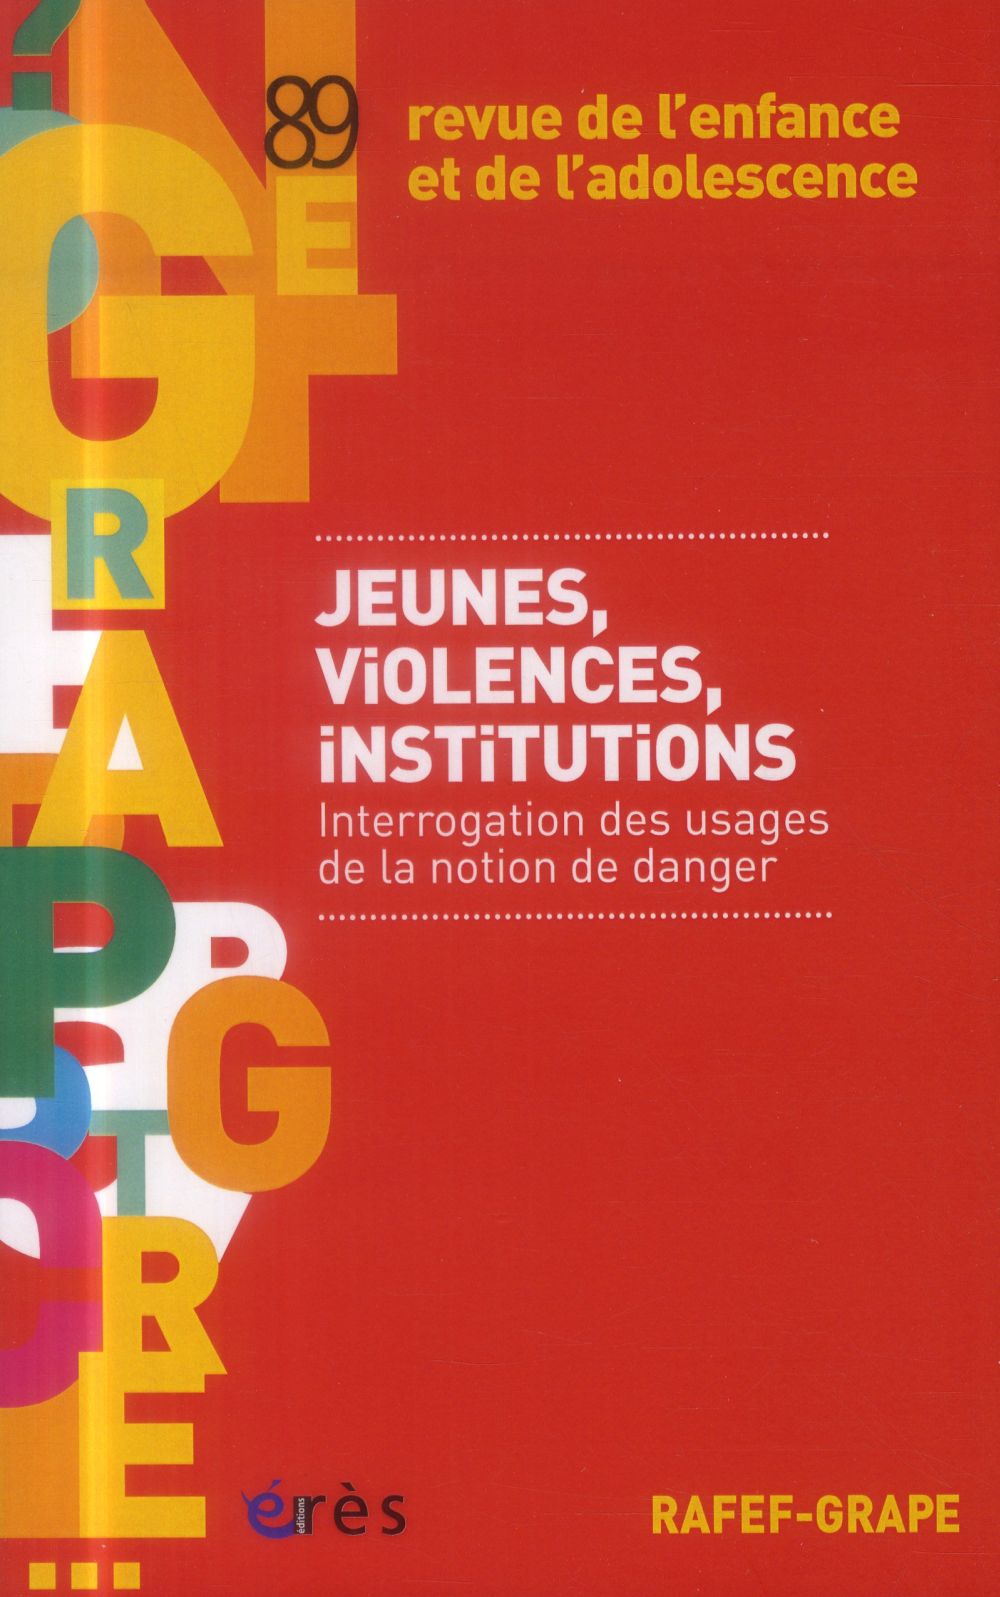 RAFEF-GRAPE 089 - JEUNES, VIOLENCES, INSTITUTIONS - INTERROGATION DES USAGES DE LA NOTION DE DANGER